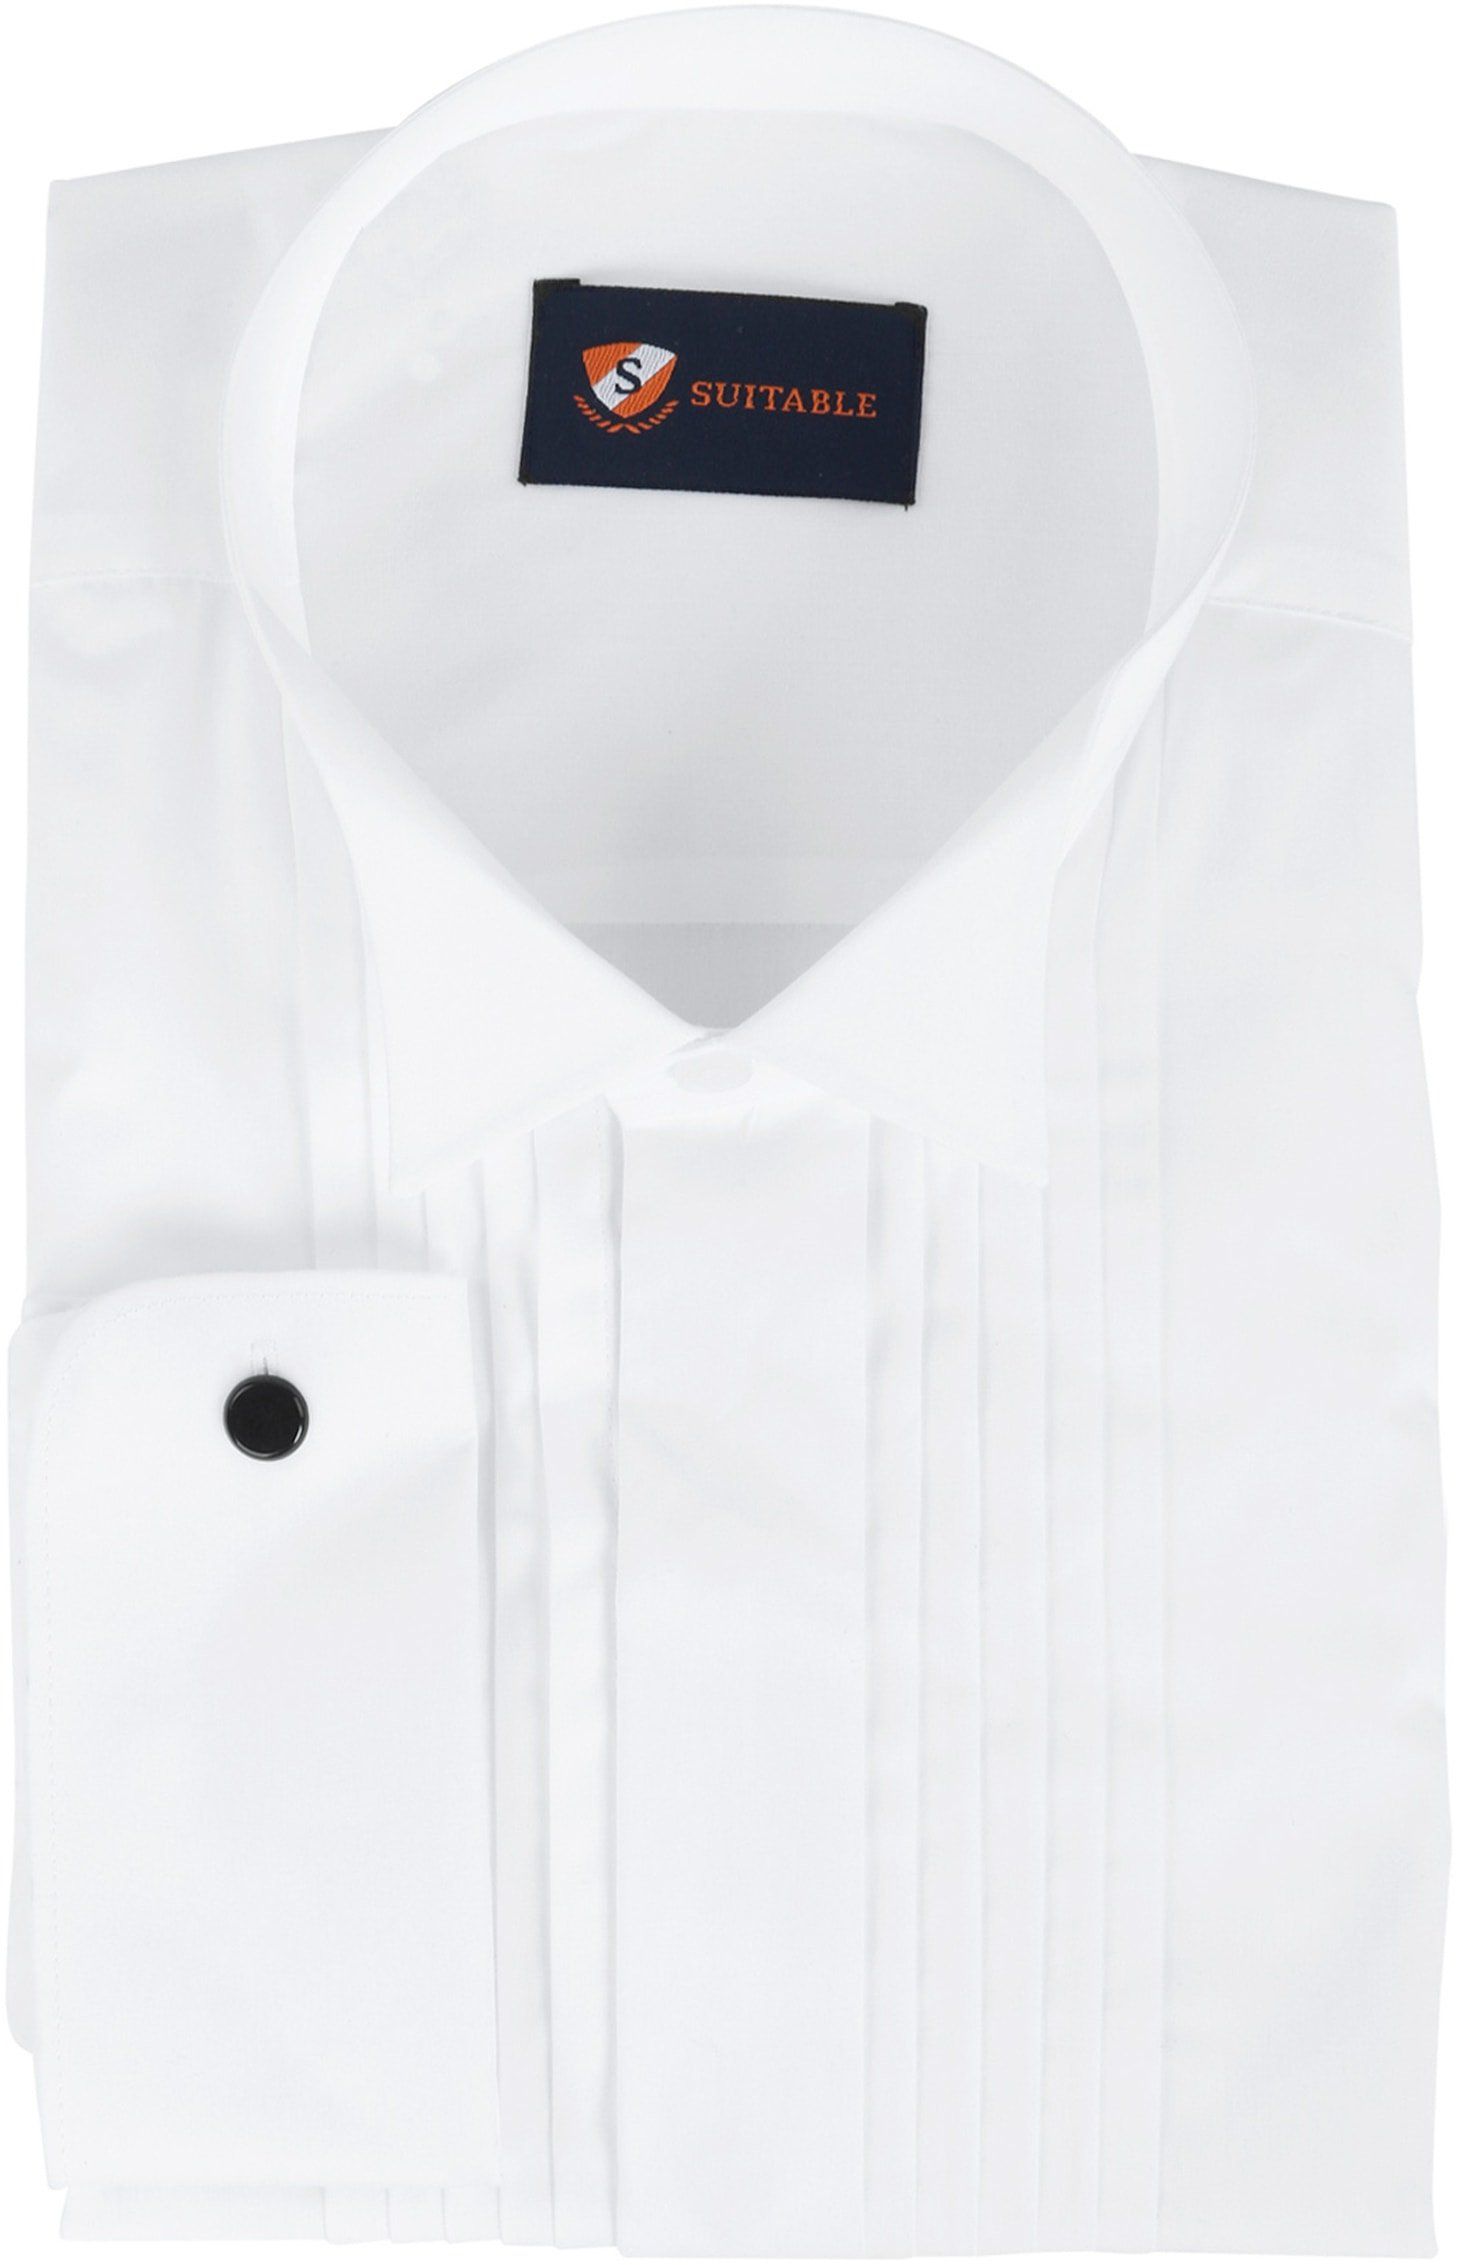 Tuxedo Shirt Pleated White size 14.5